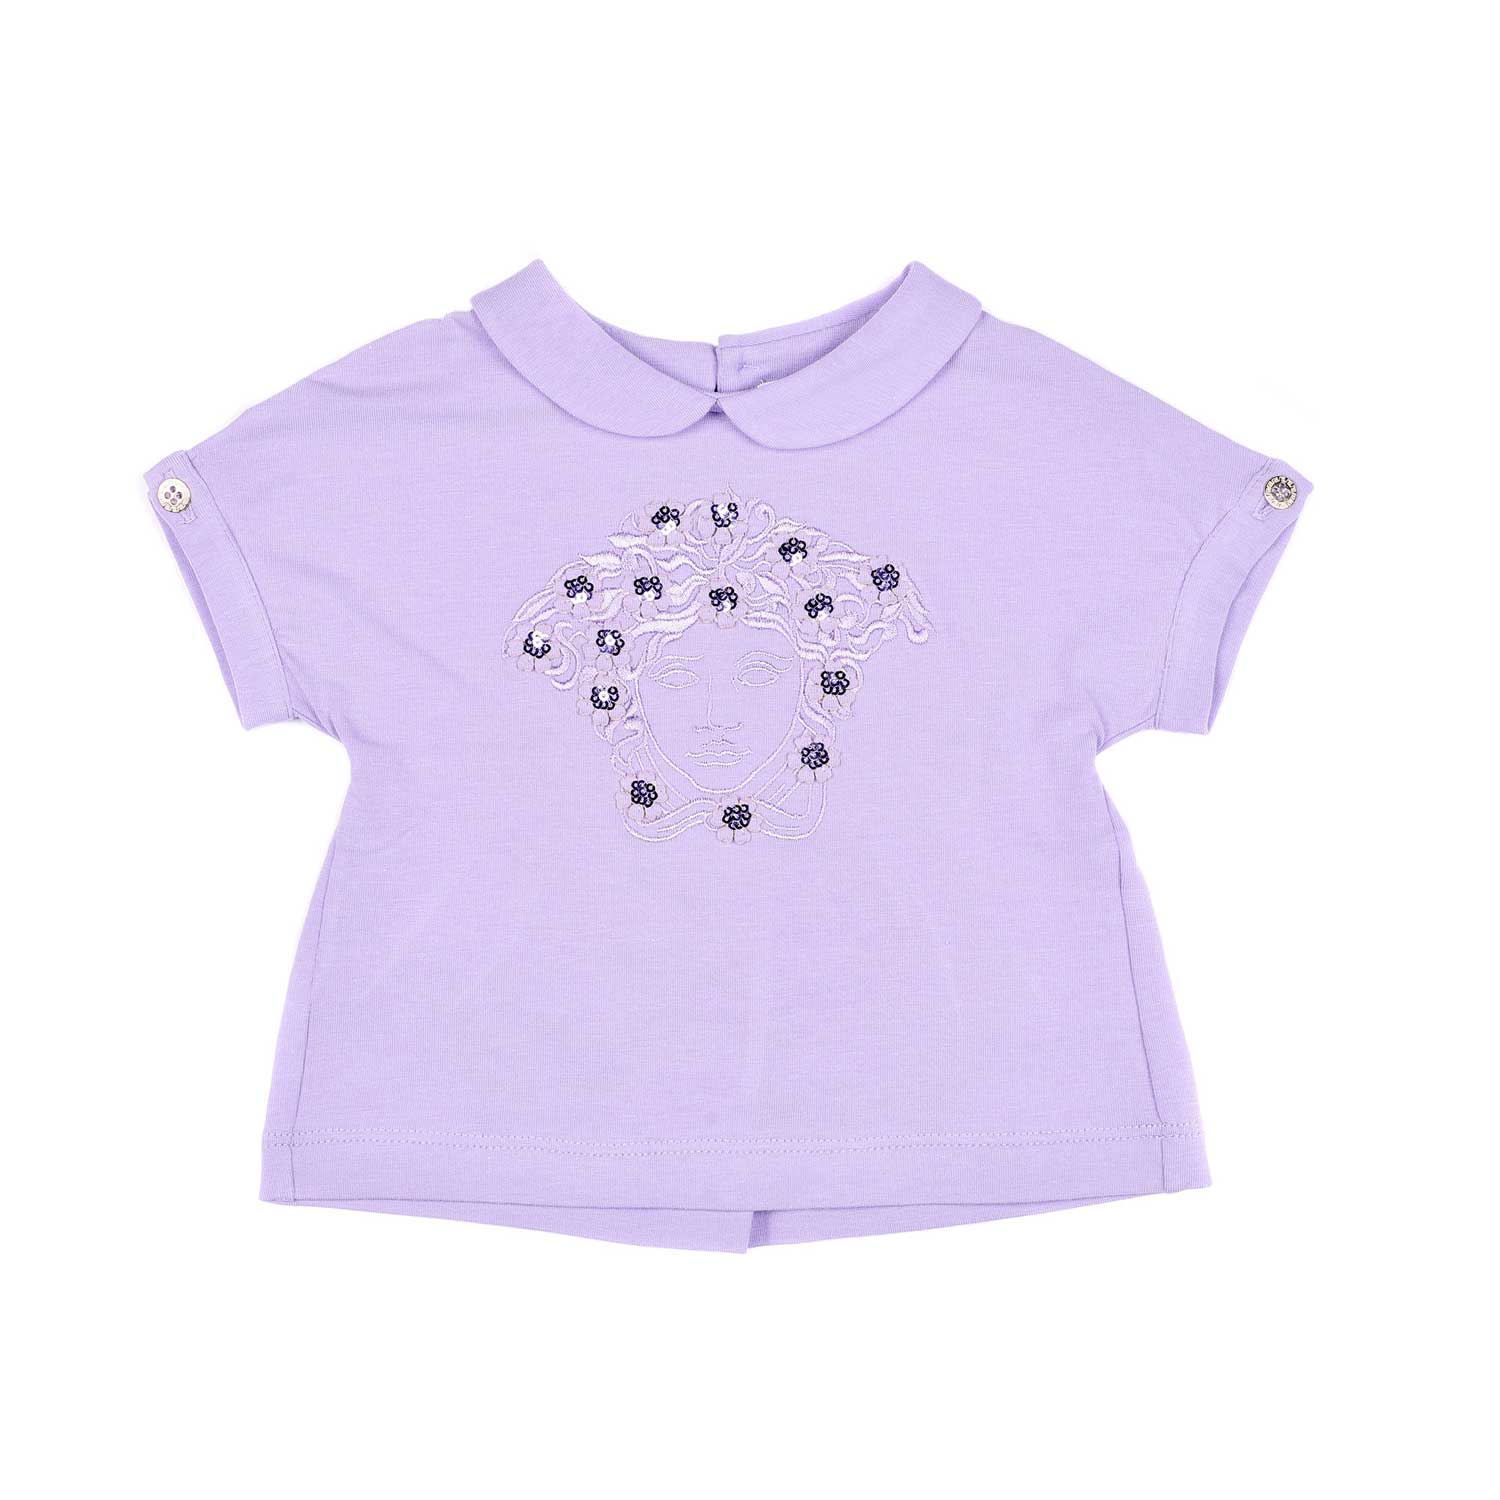 versace-purple-peter-pan-collar-t-shirt-48518-1